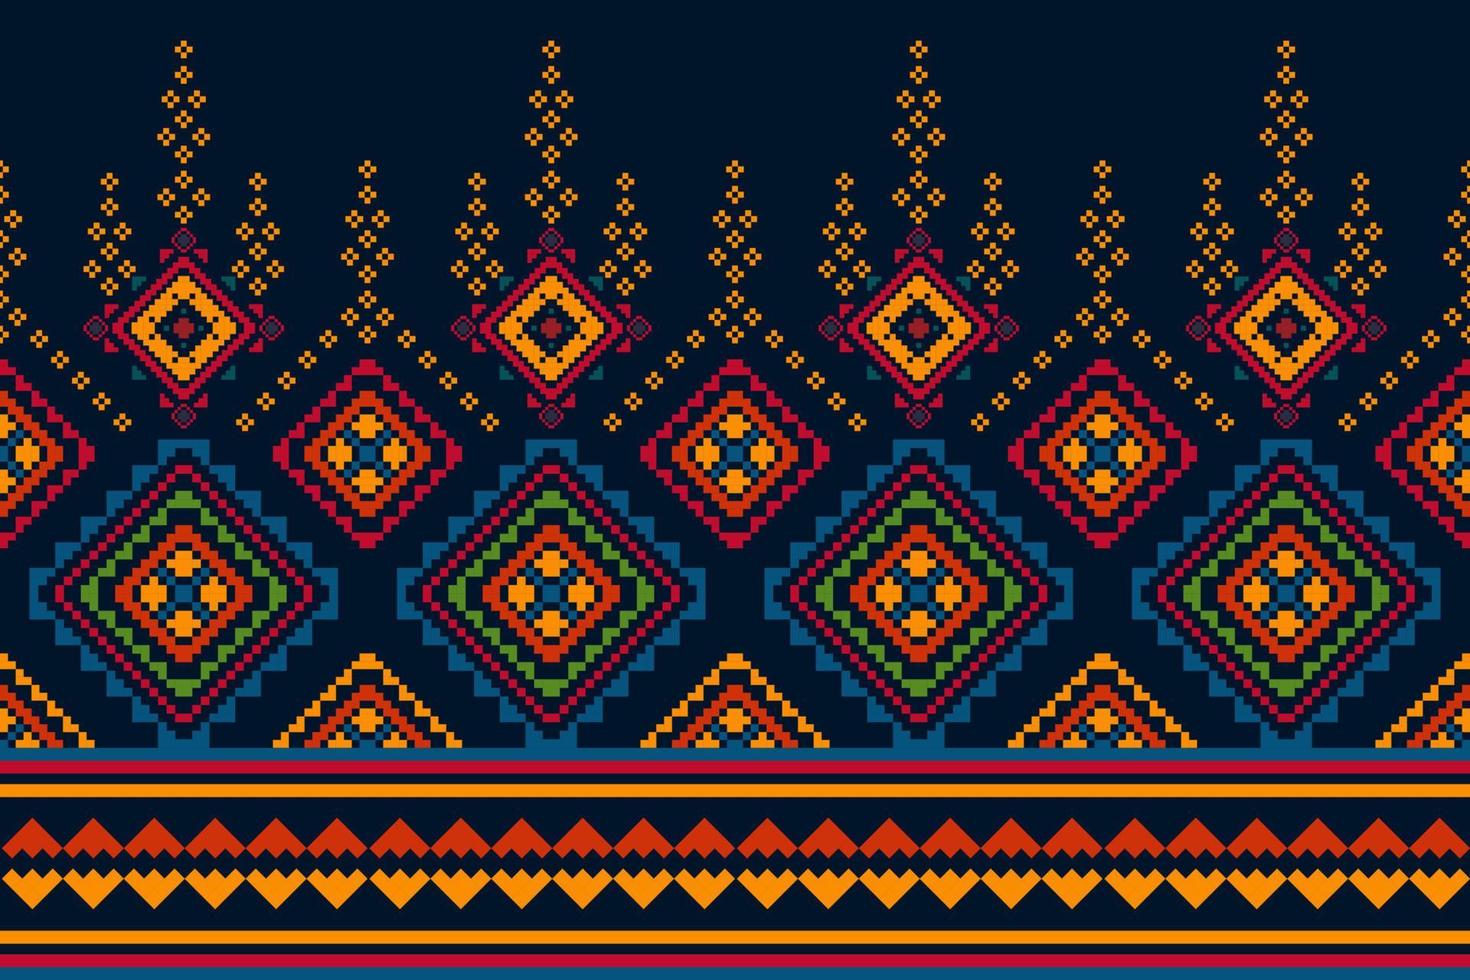 ikat ethnisches nahtloses muster-hauptdekorationsdesign. aztekischer stoffteppich boho mandalas textildekor tapete. Stammes-native Motiv Folk traditionelle Stickerei Vektorgrafiken Hintergrund vektor